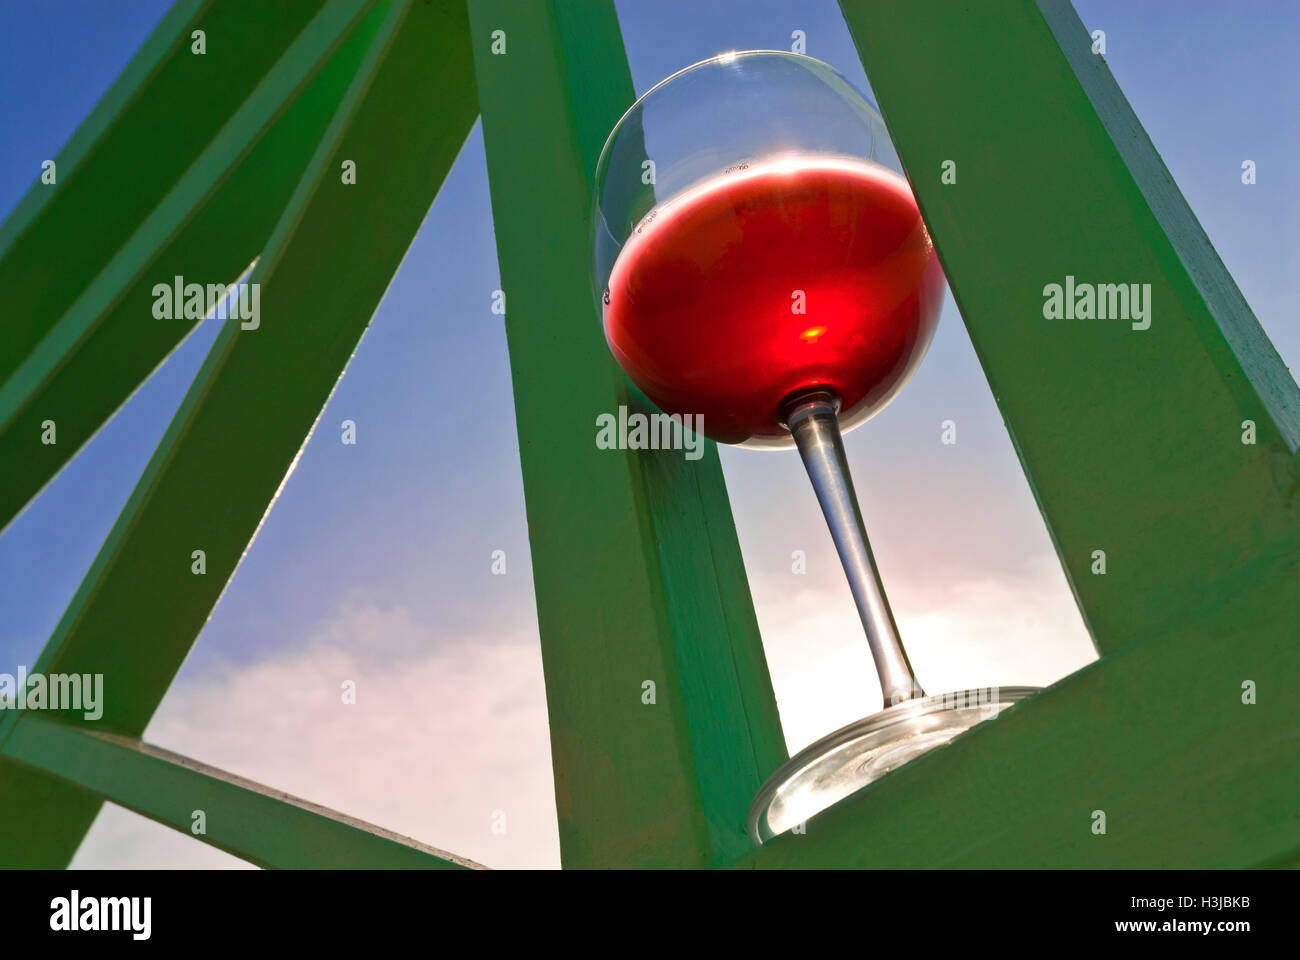 Visualizzazione grafica sul bicchiere di vino rosso sulla veranda alfresco in impostazione di vacanza con il cielo dietro al tramonto Foto Stock